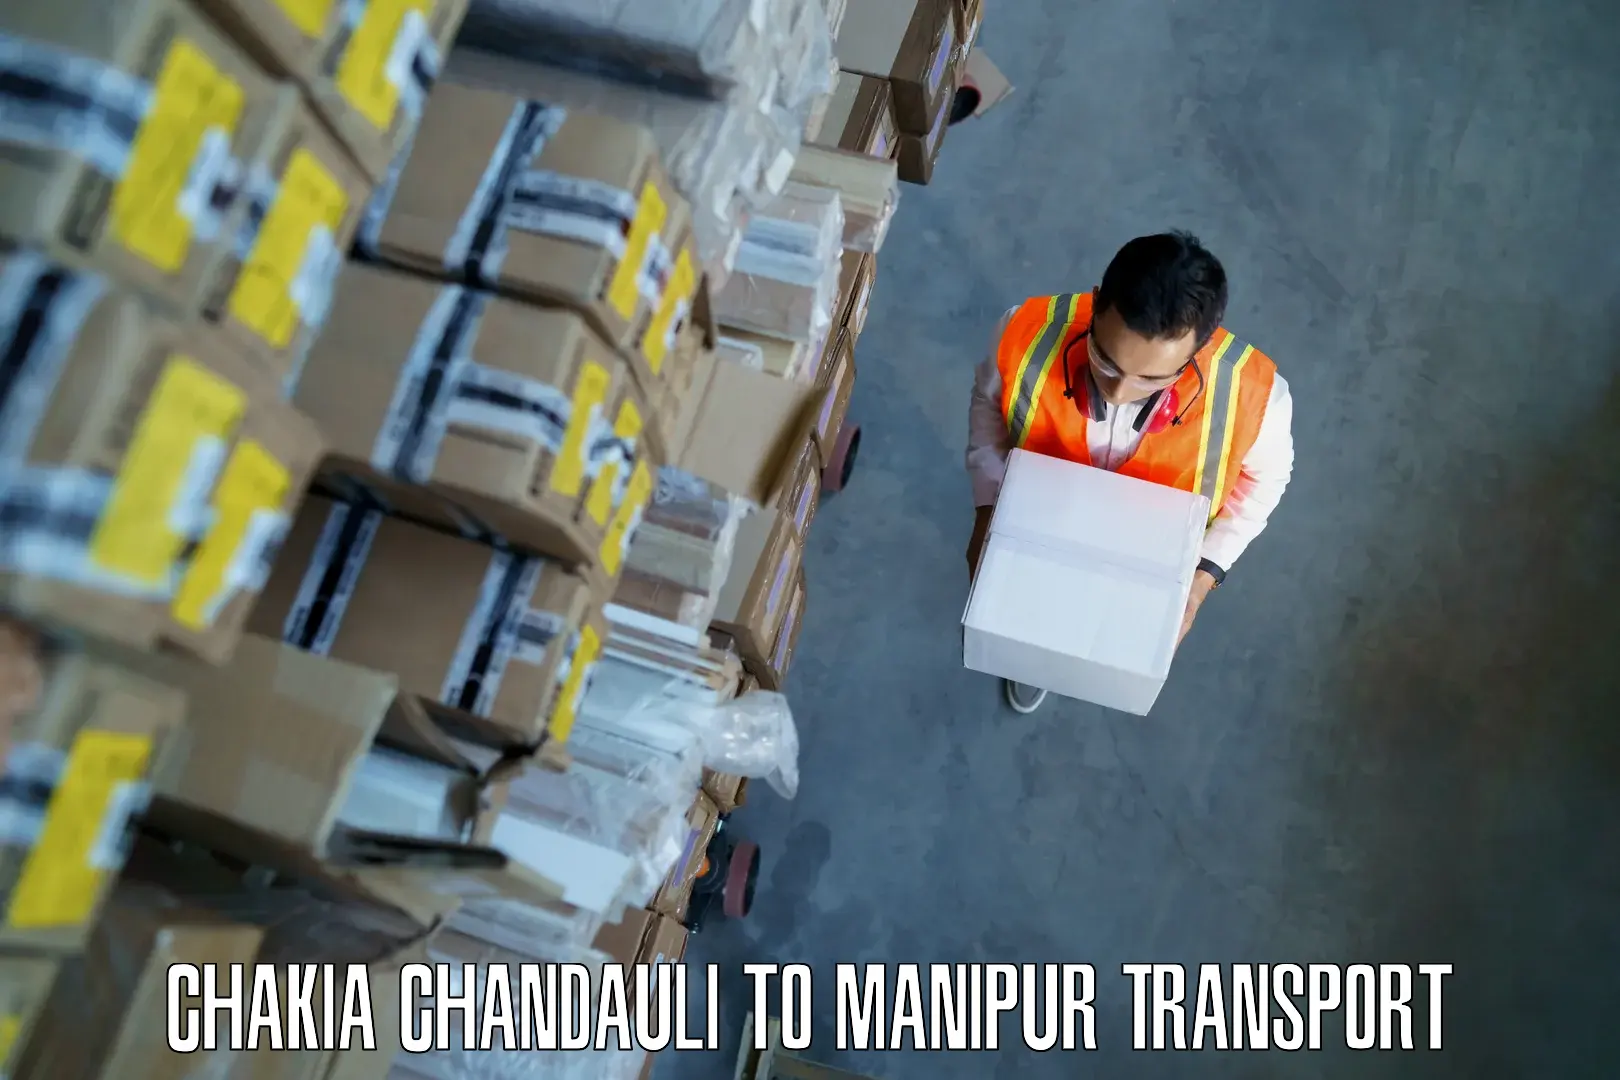 Furniture transport service Chakia Chandauli to Jiribam